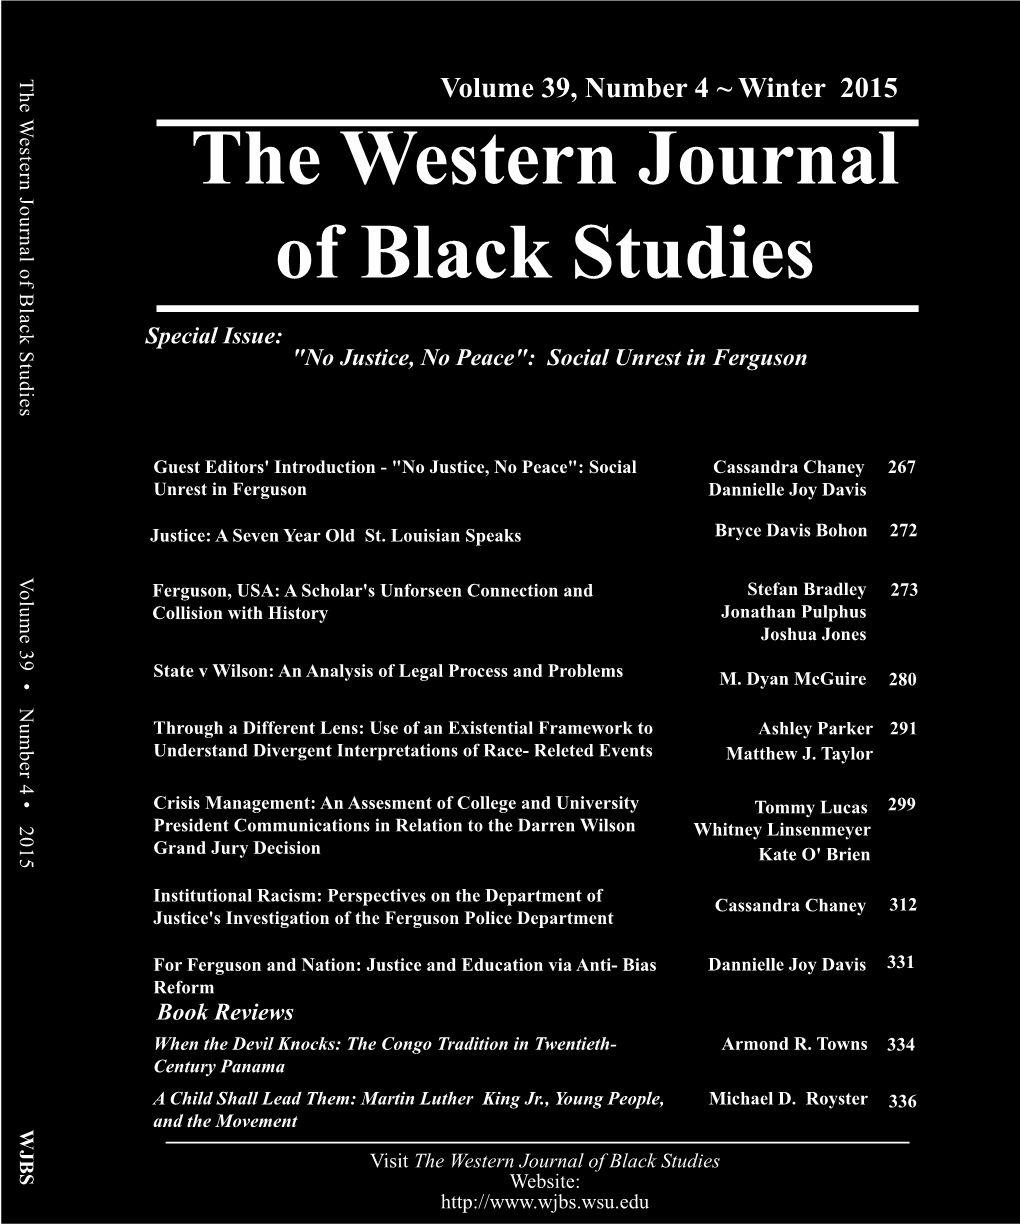 The Western Journal of Black Studies